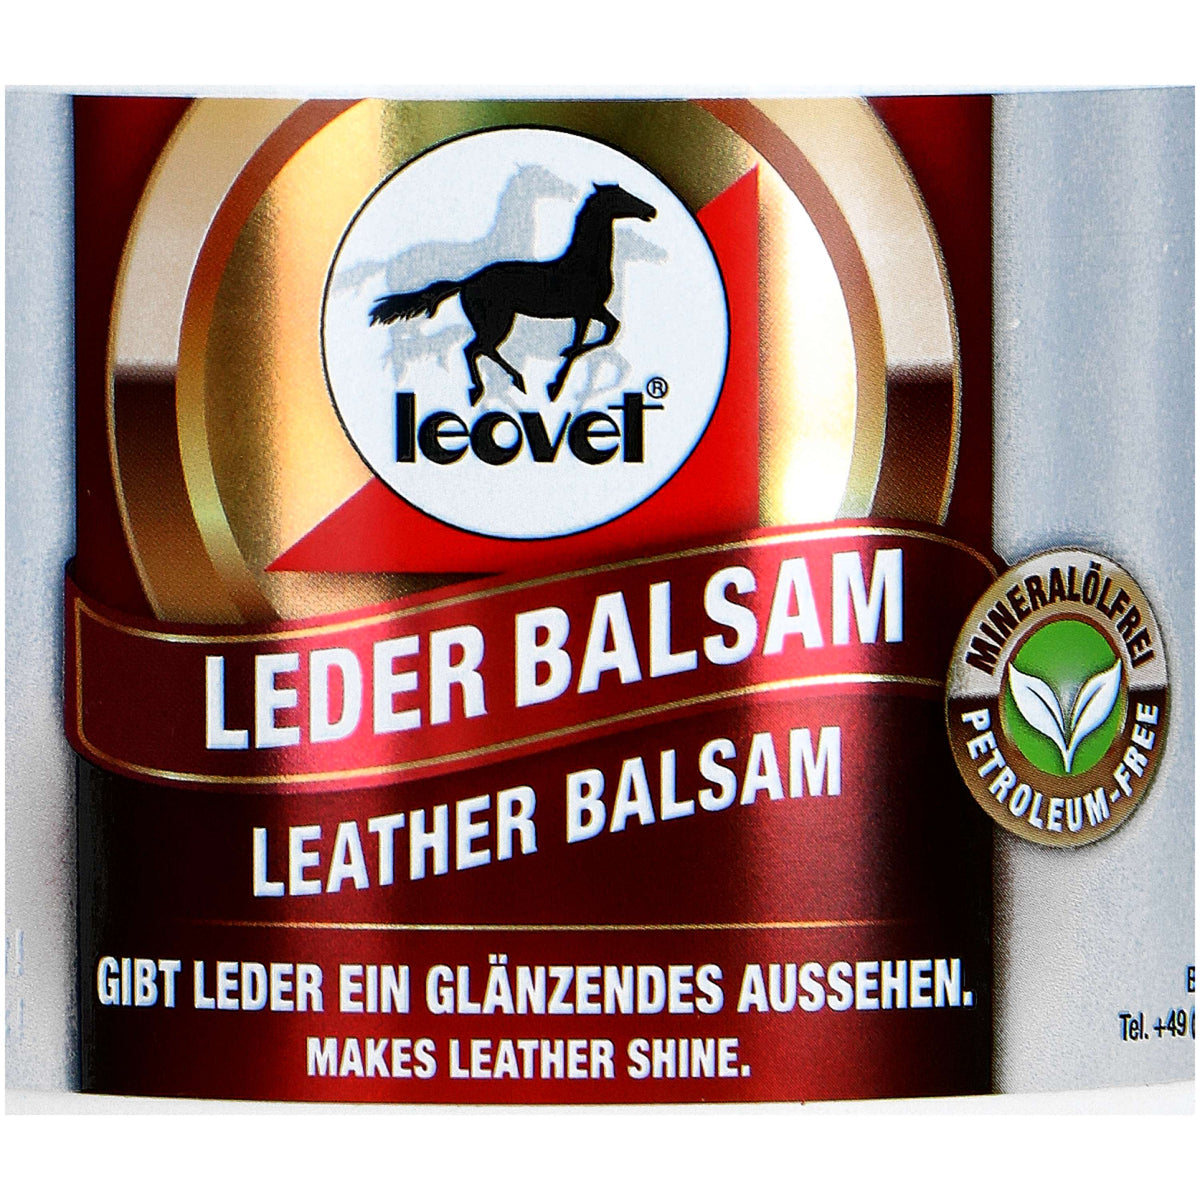 Leovet Leather Balsem